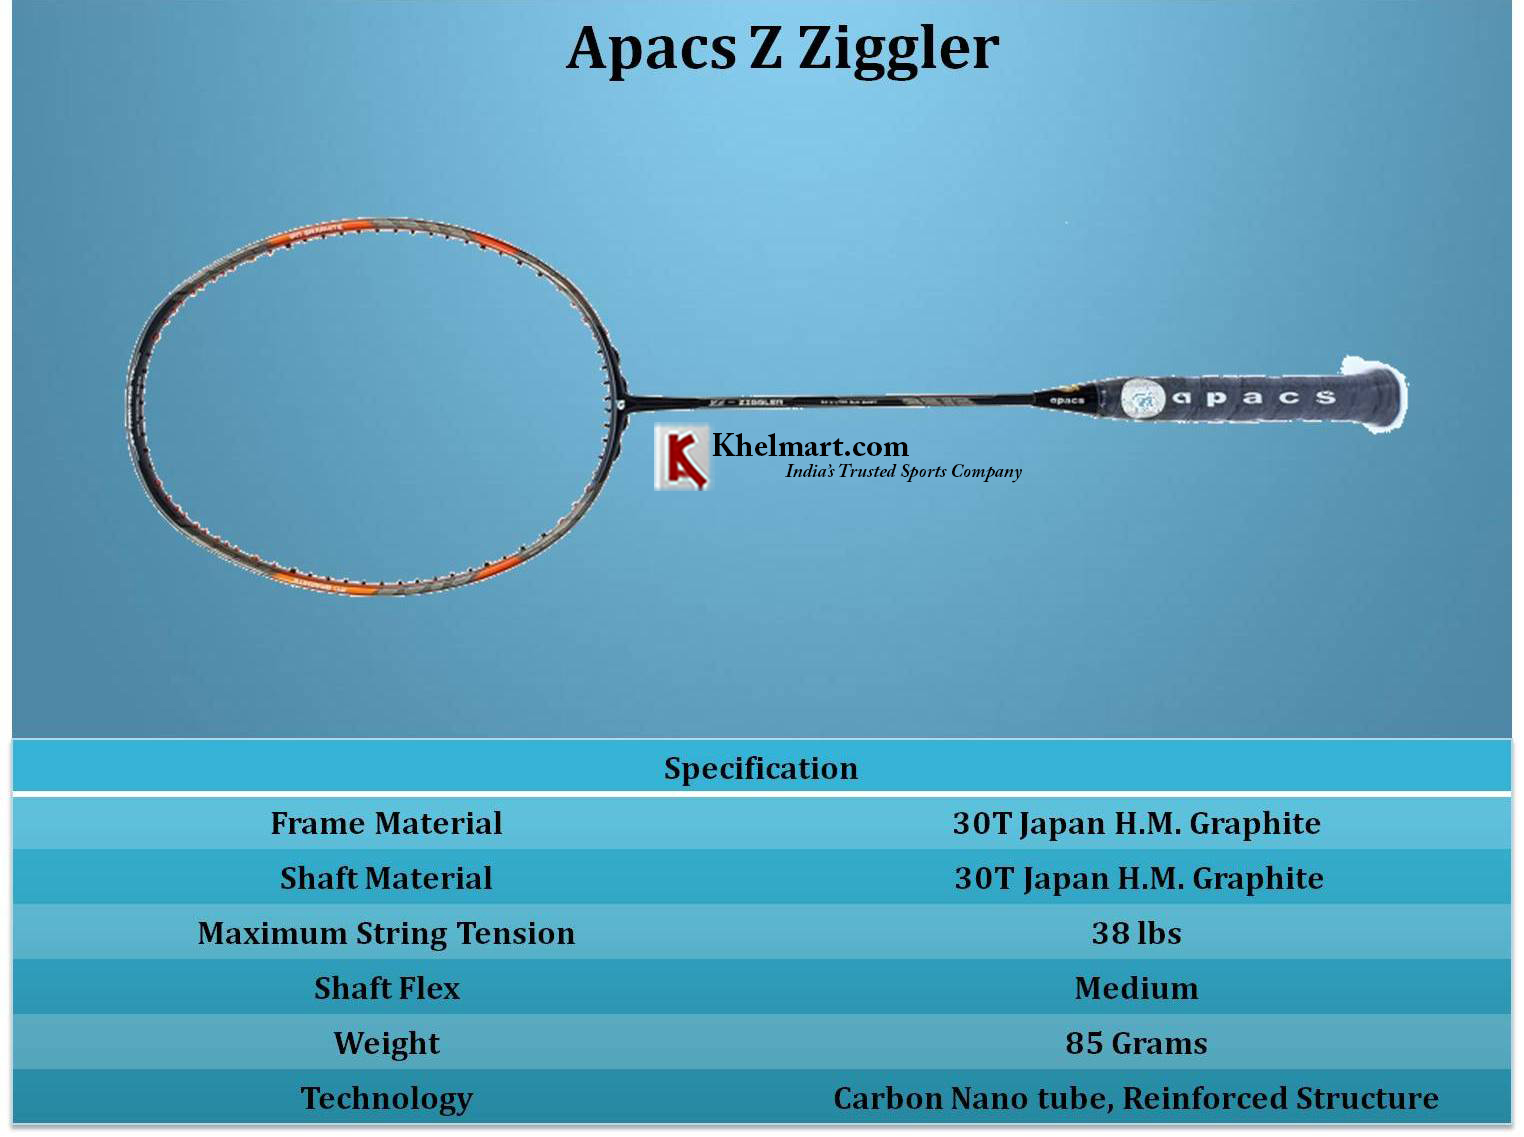 Apacs_Z_Ziggler_Specification_Khelmart_1